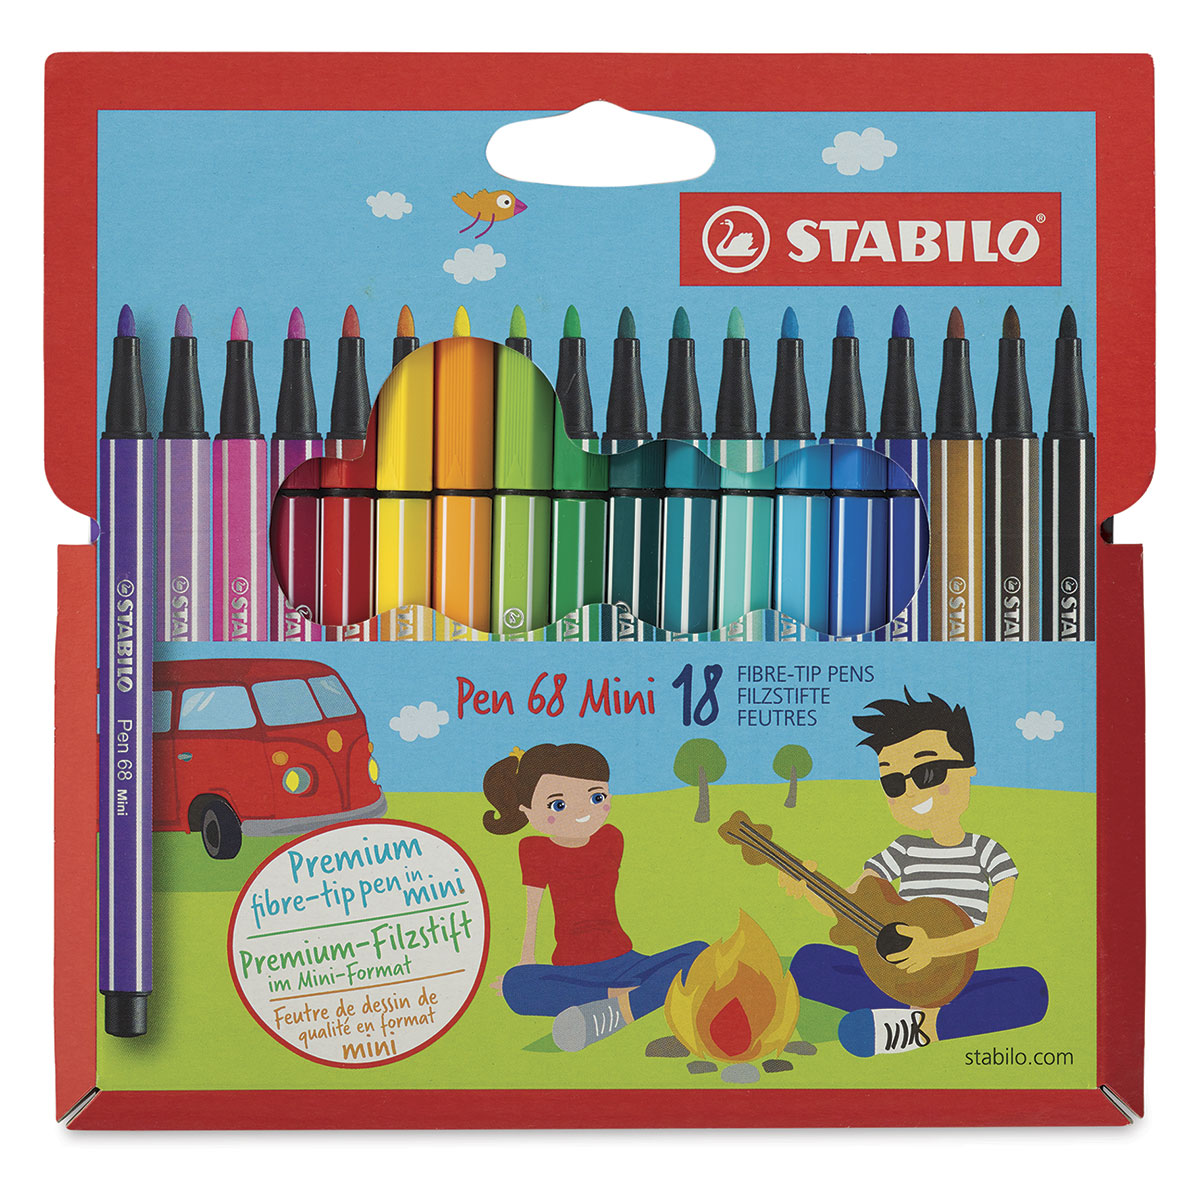 Stabilo Mini Pen 68 Wallet, 18 - Color Set